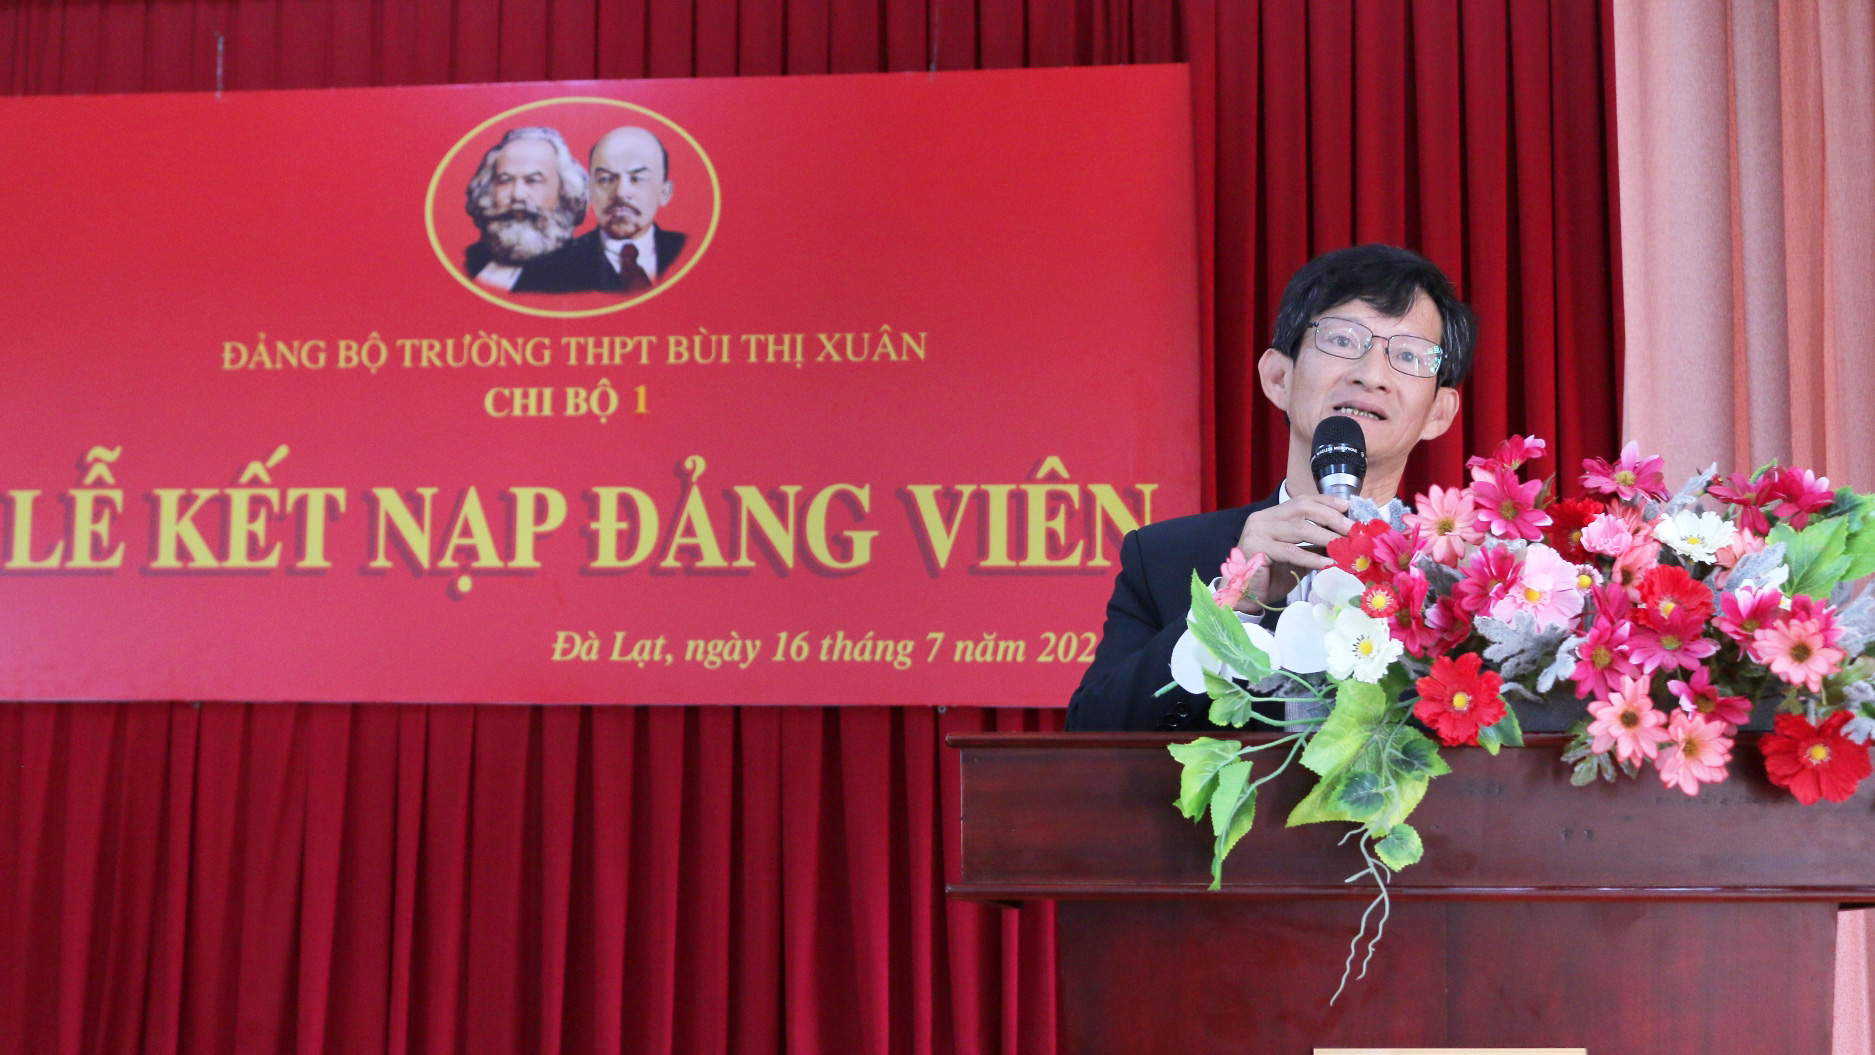 Đồng chí Trịnh Hoài Duy - Bí thư Đảng ủy, Hiệu trưởng Trường THPT Bùi Thị Xuân phát biểu tại lễ kết nạp